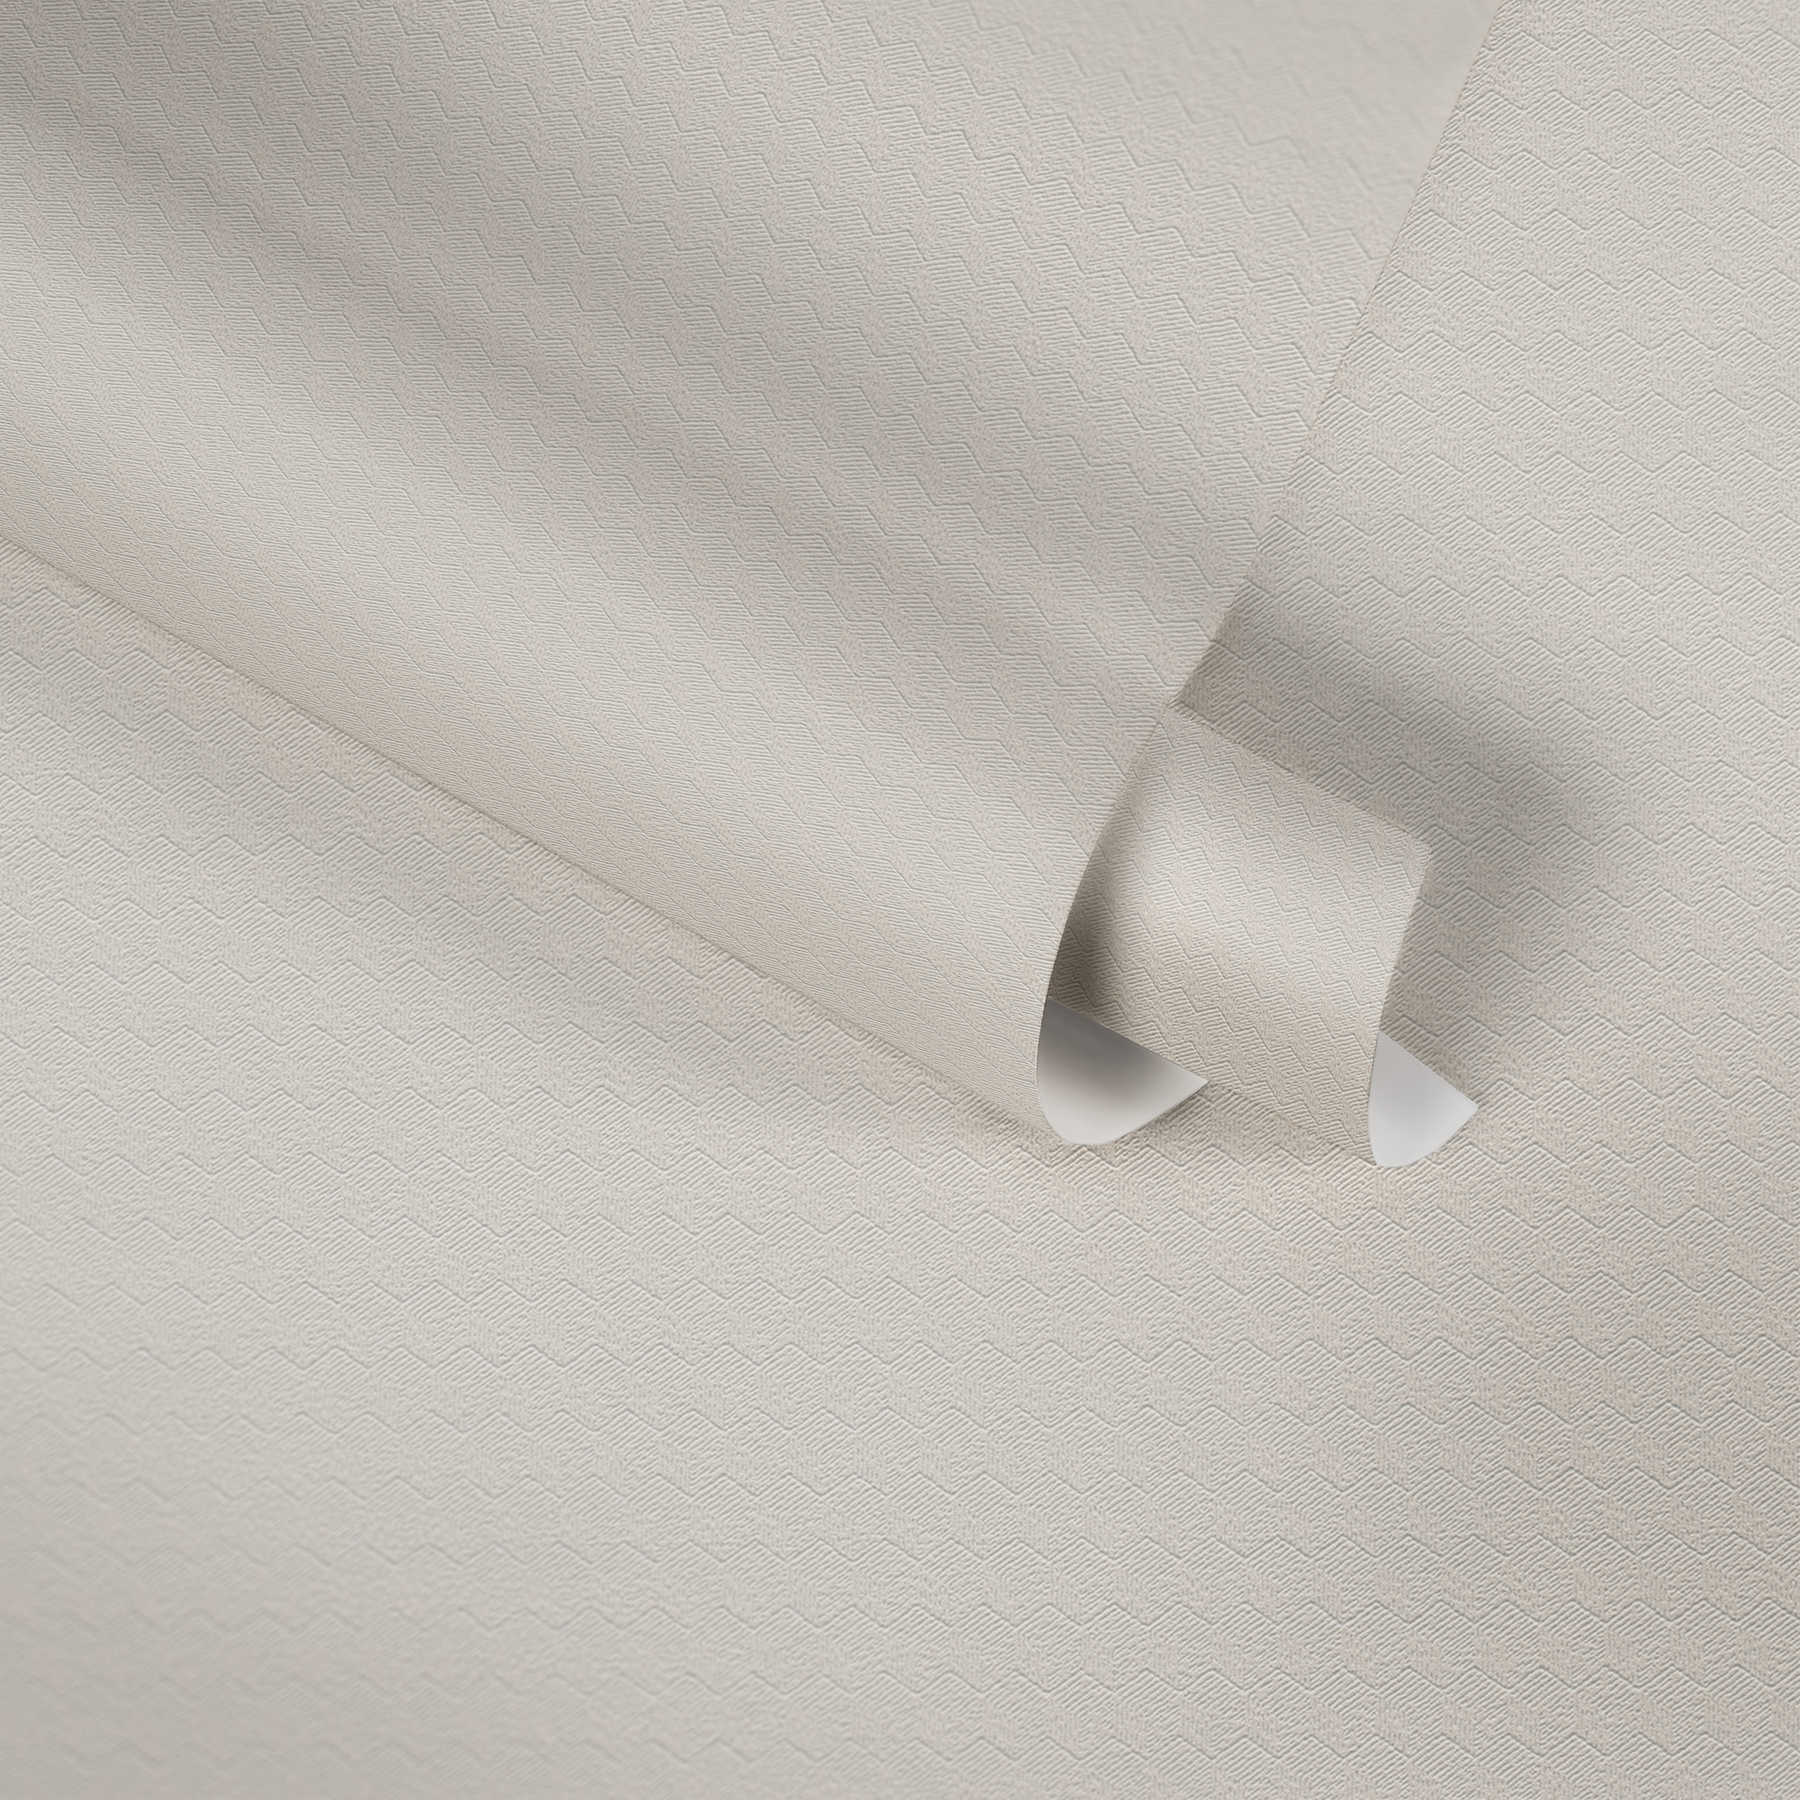             behang zigzag design & structuurpatroon - beige, crème, grijs
        